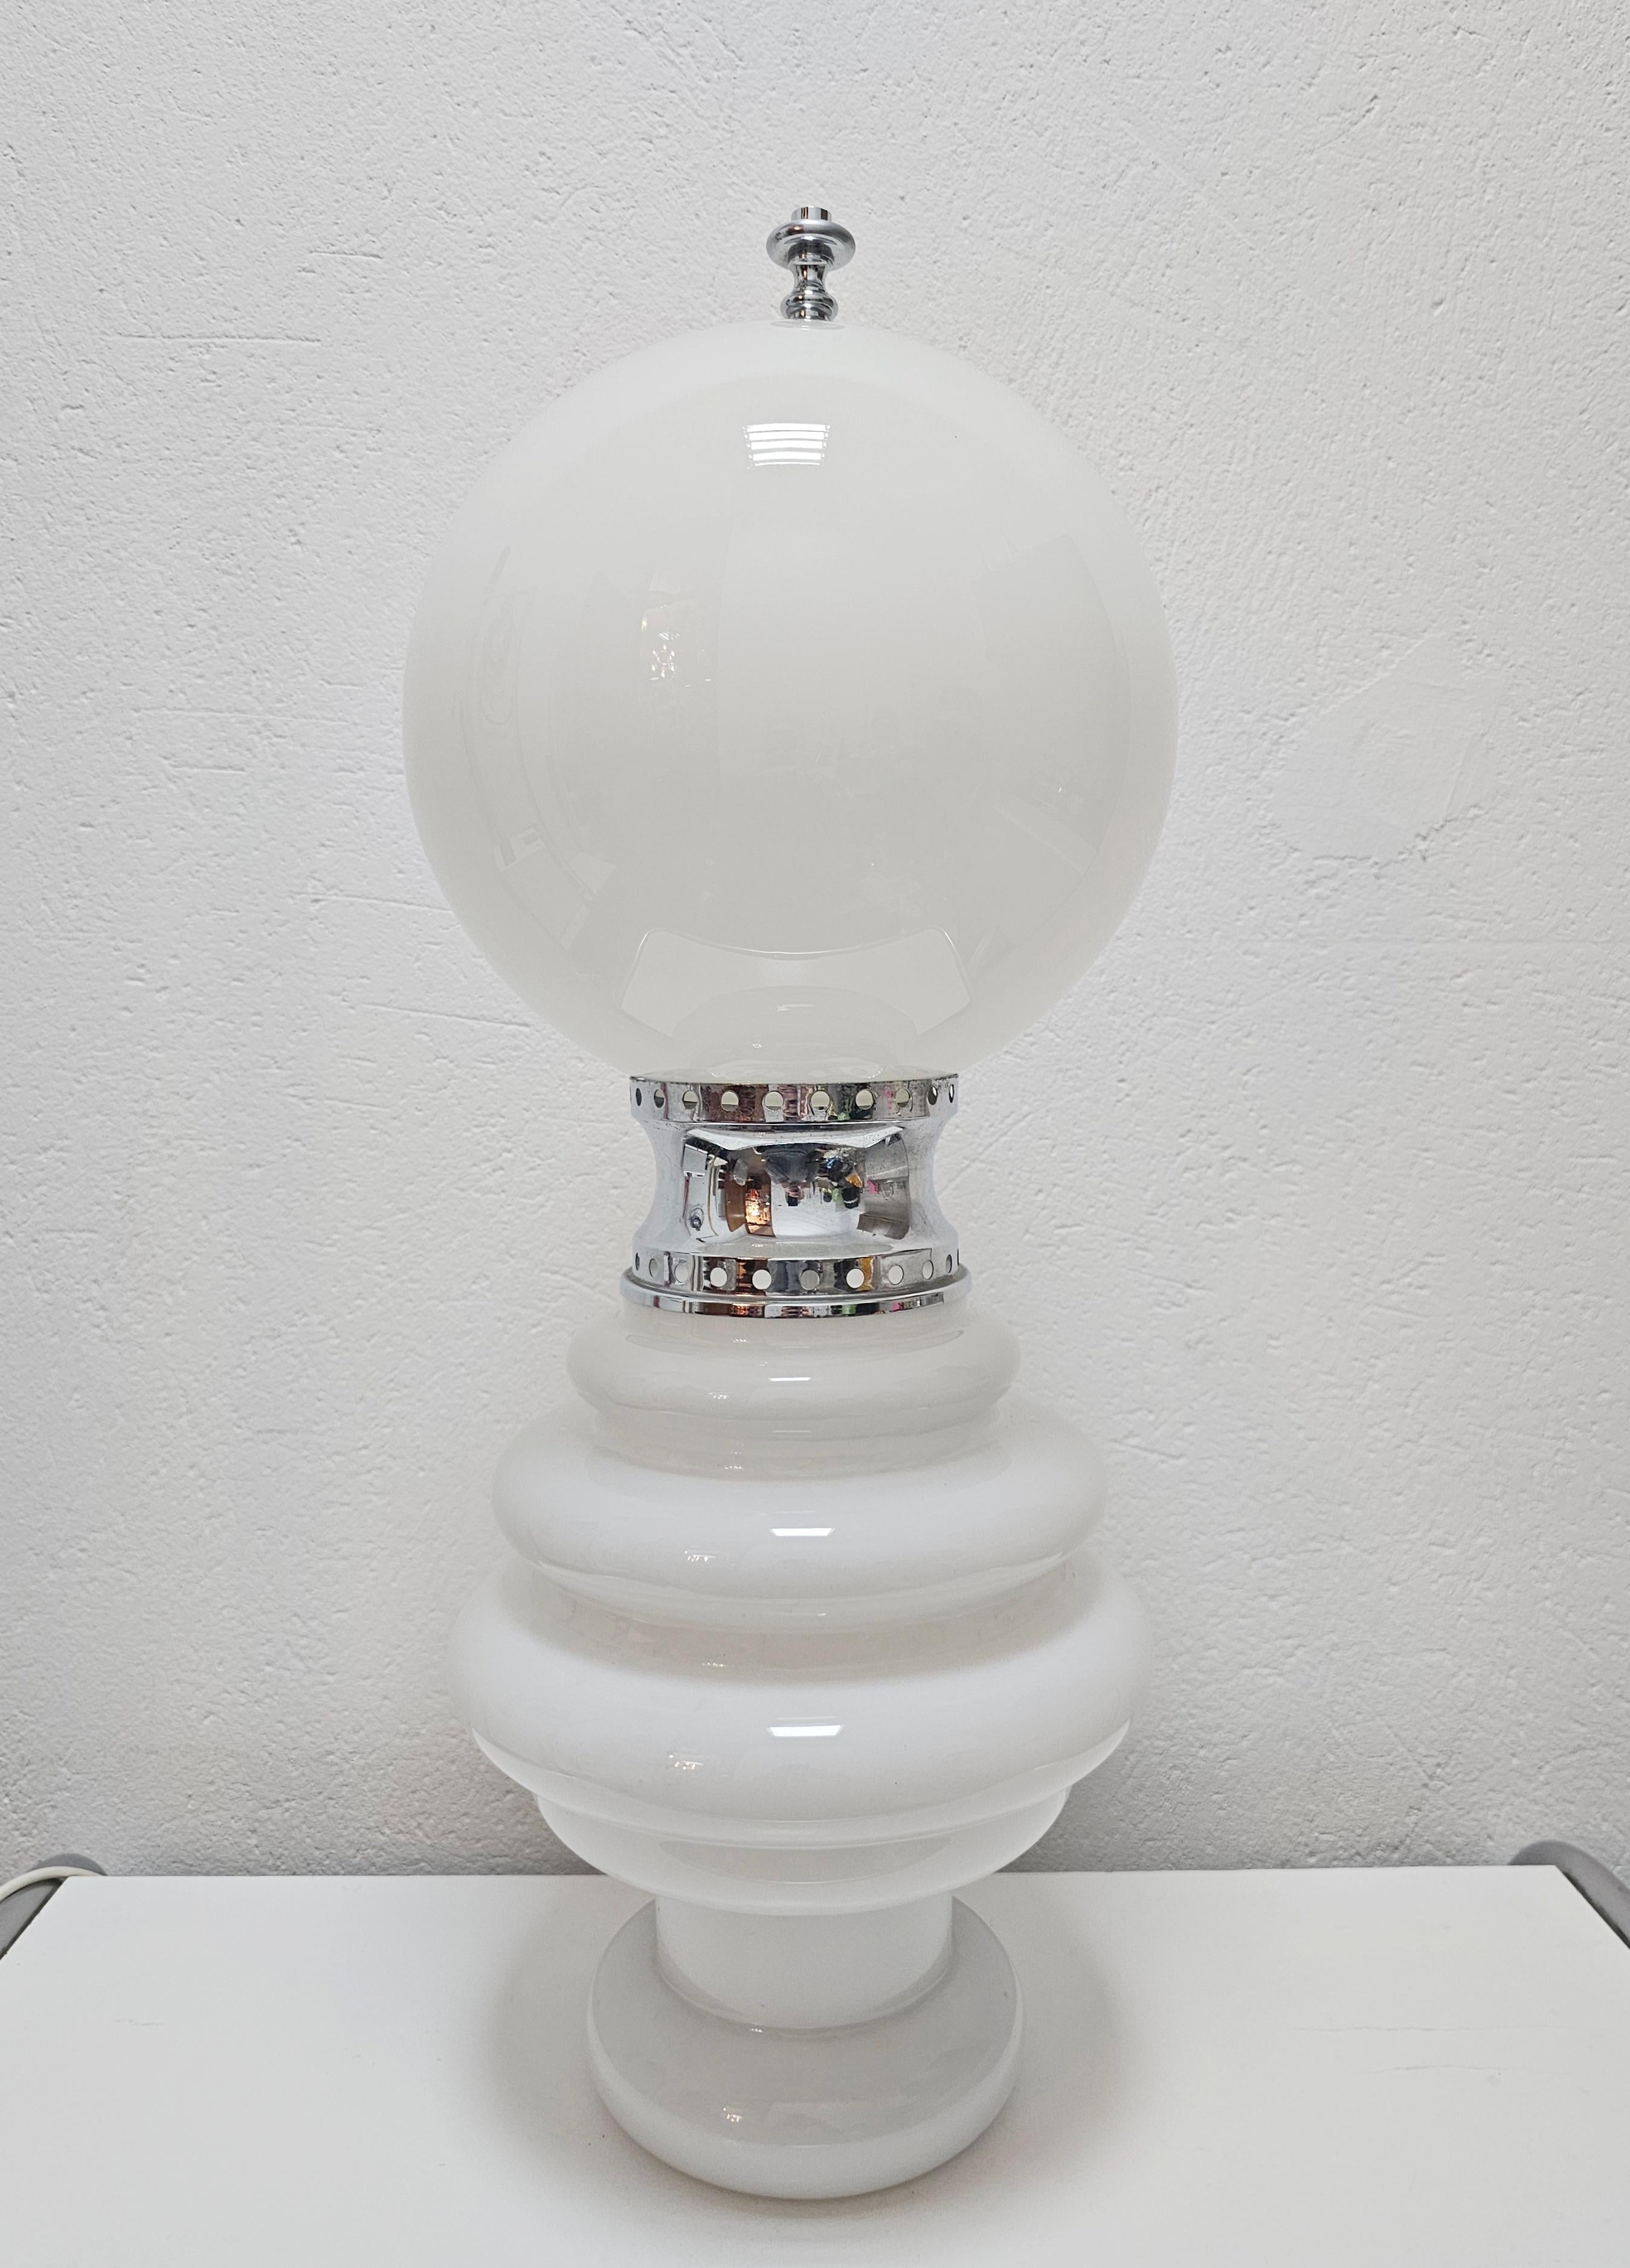 Dans cette liste, vous trouverez un rare lampadaire de l'ère spatiale ou une grande lampe de table conçue par Carlo Nason pour Mazzega. Elle est composée de deux parties en verre blanc de Murano qui sont reliées par un anneau d'argent. Chaque partie